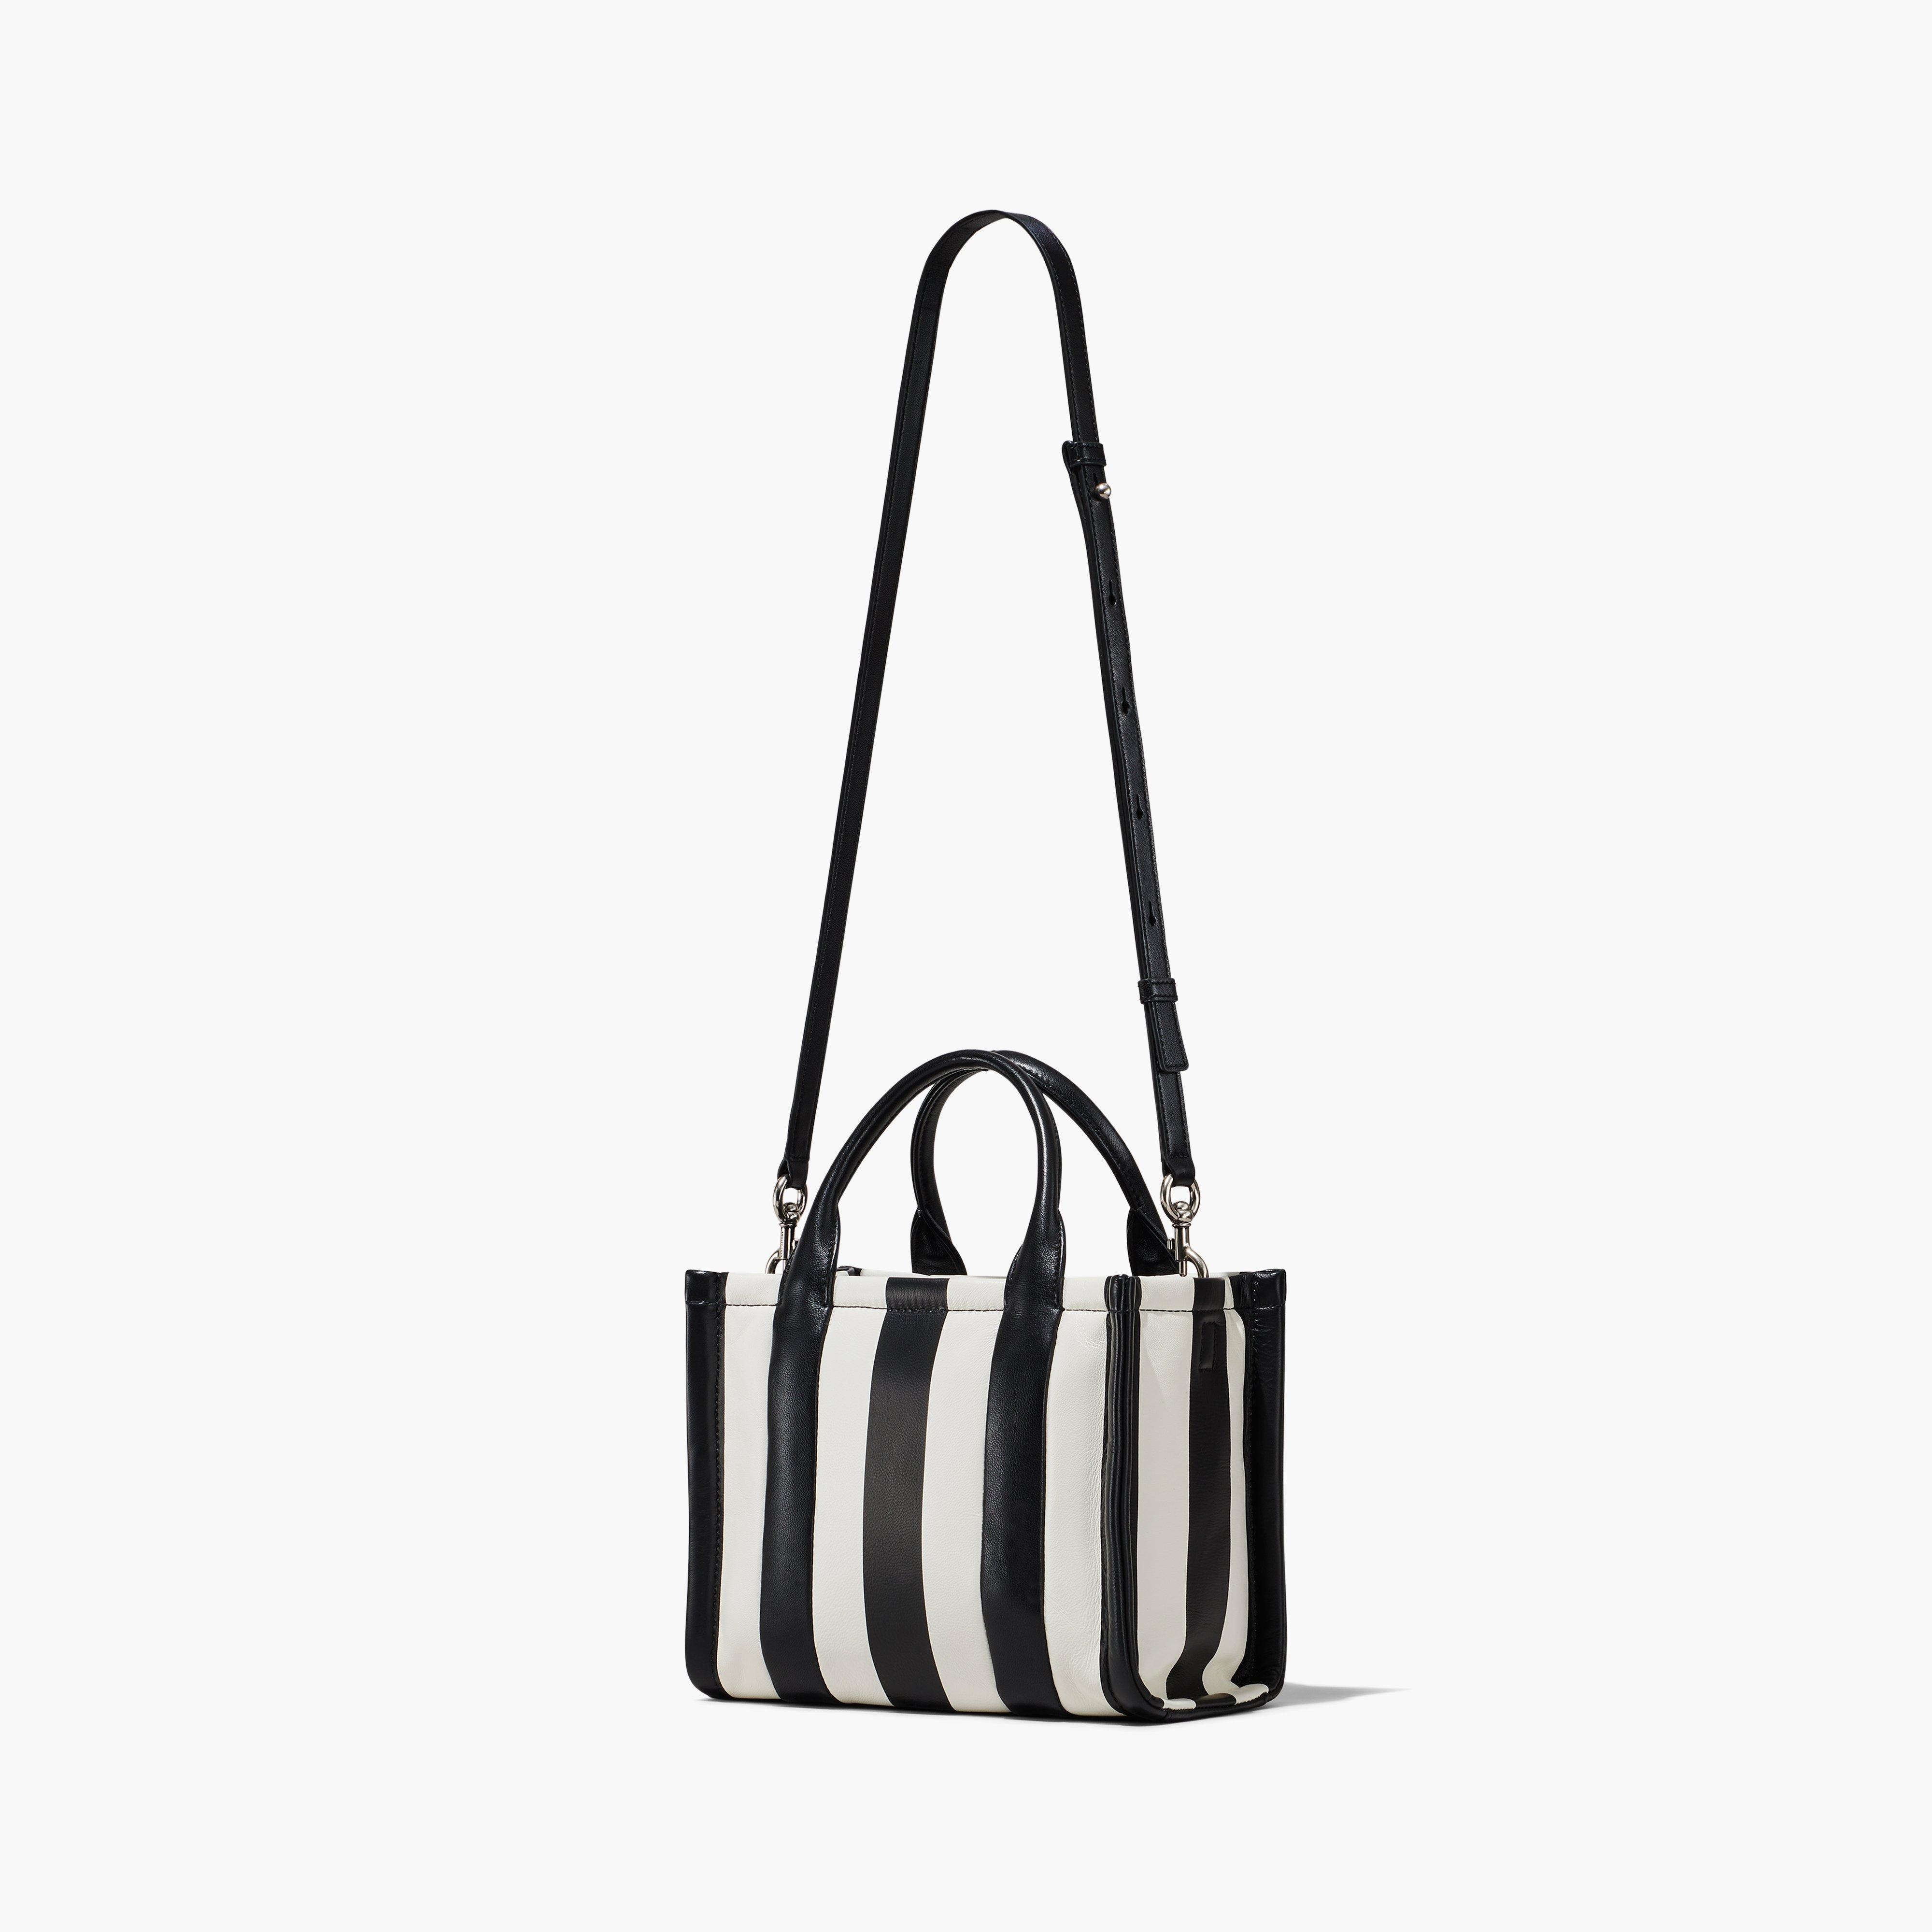 The Striped Mini Tote Bag